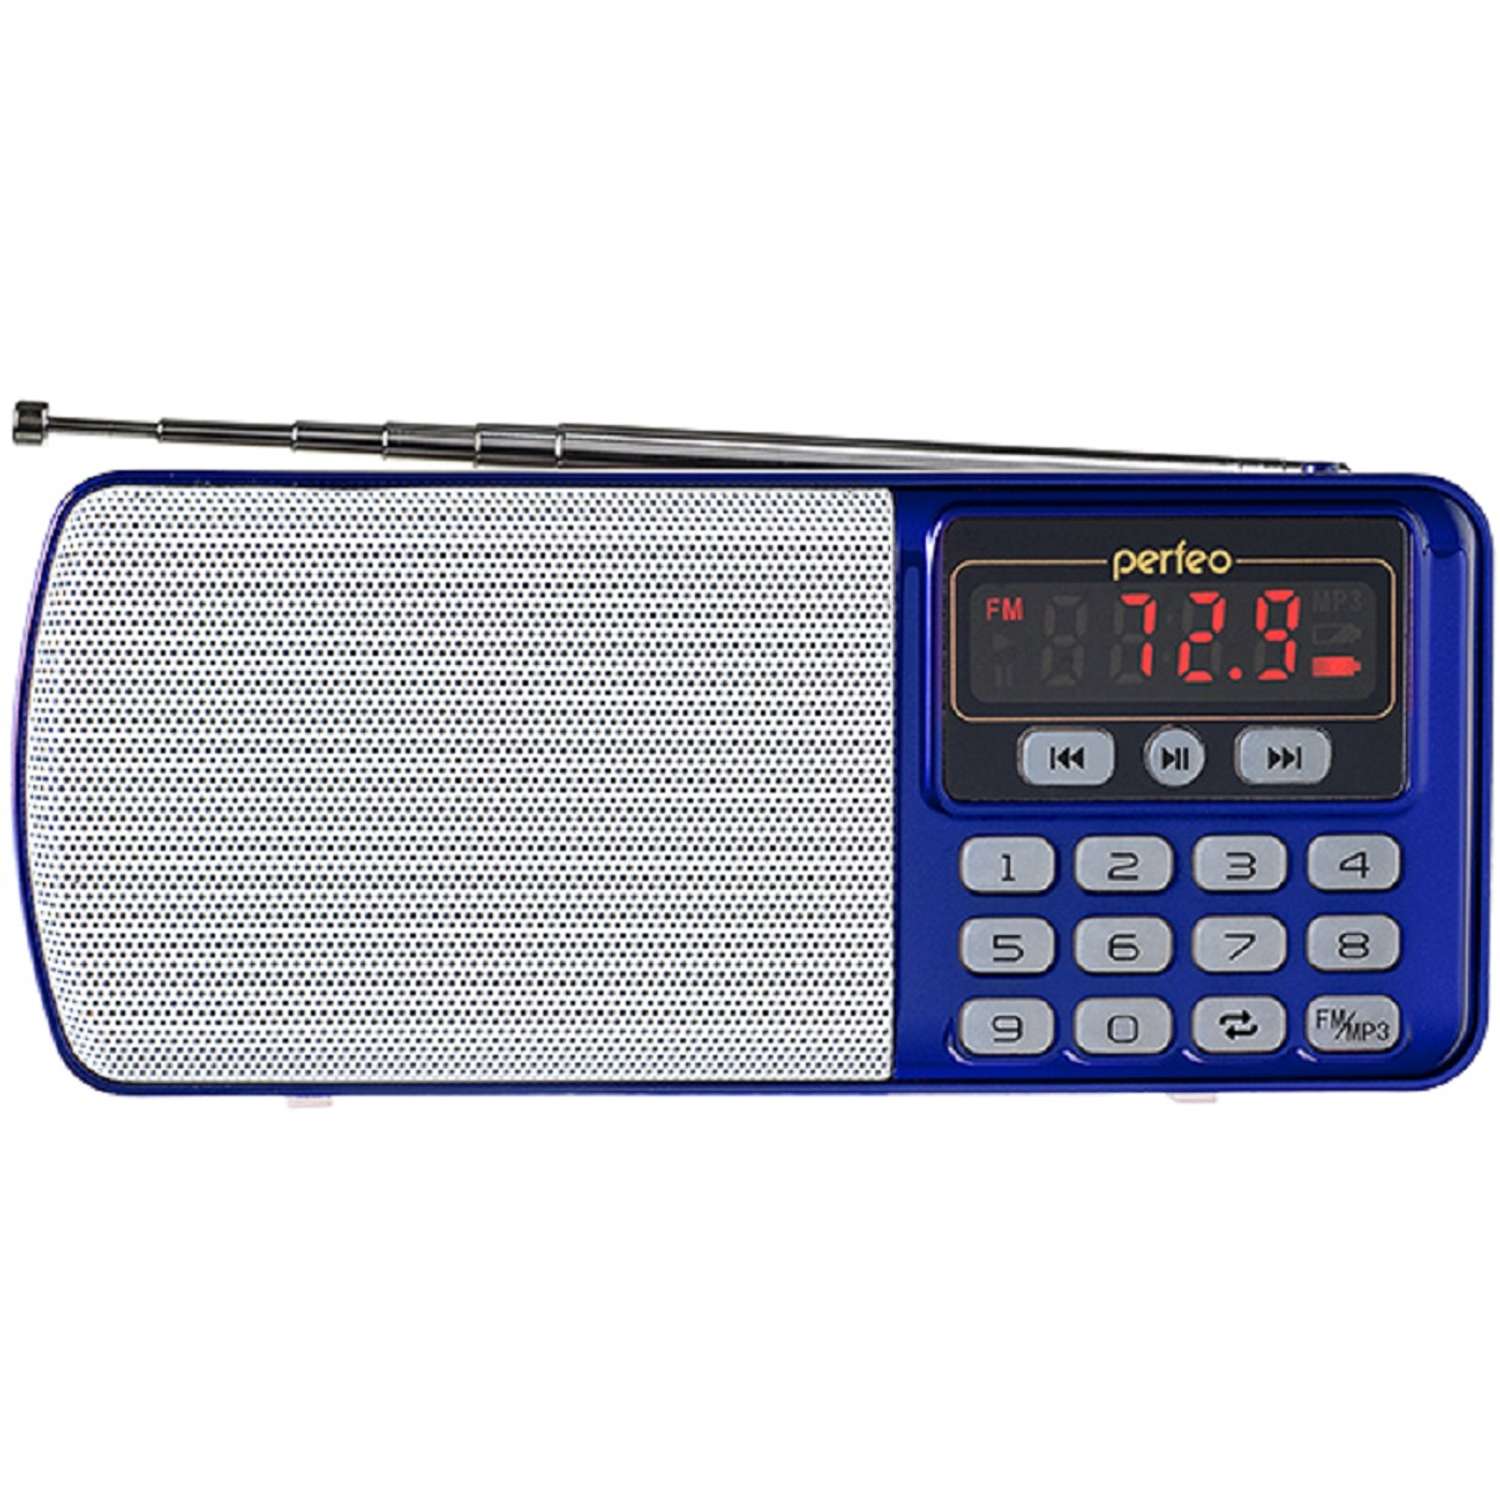 Радиоприемник Perfeo цифровой ЕГЕРЬ FM+ 70-108МГц MP3 питание USB или BL5C цвет синий i120-BL - фото 1